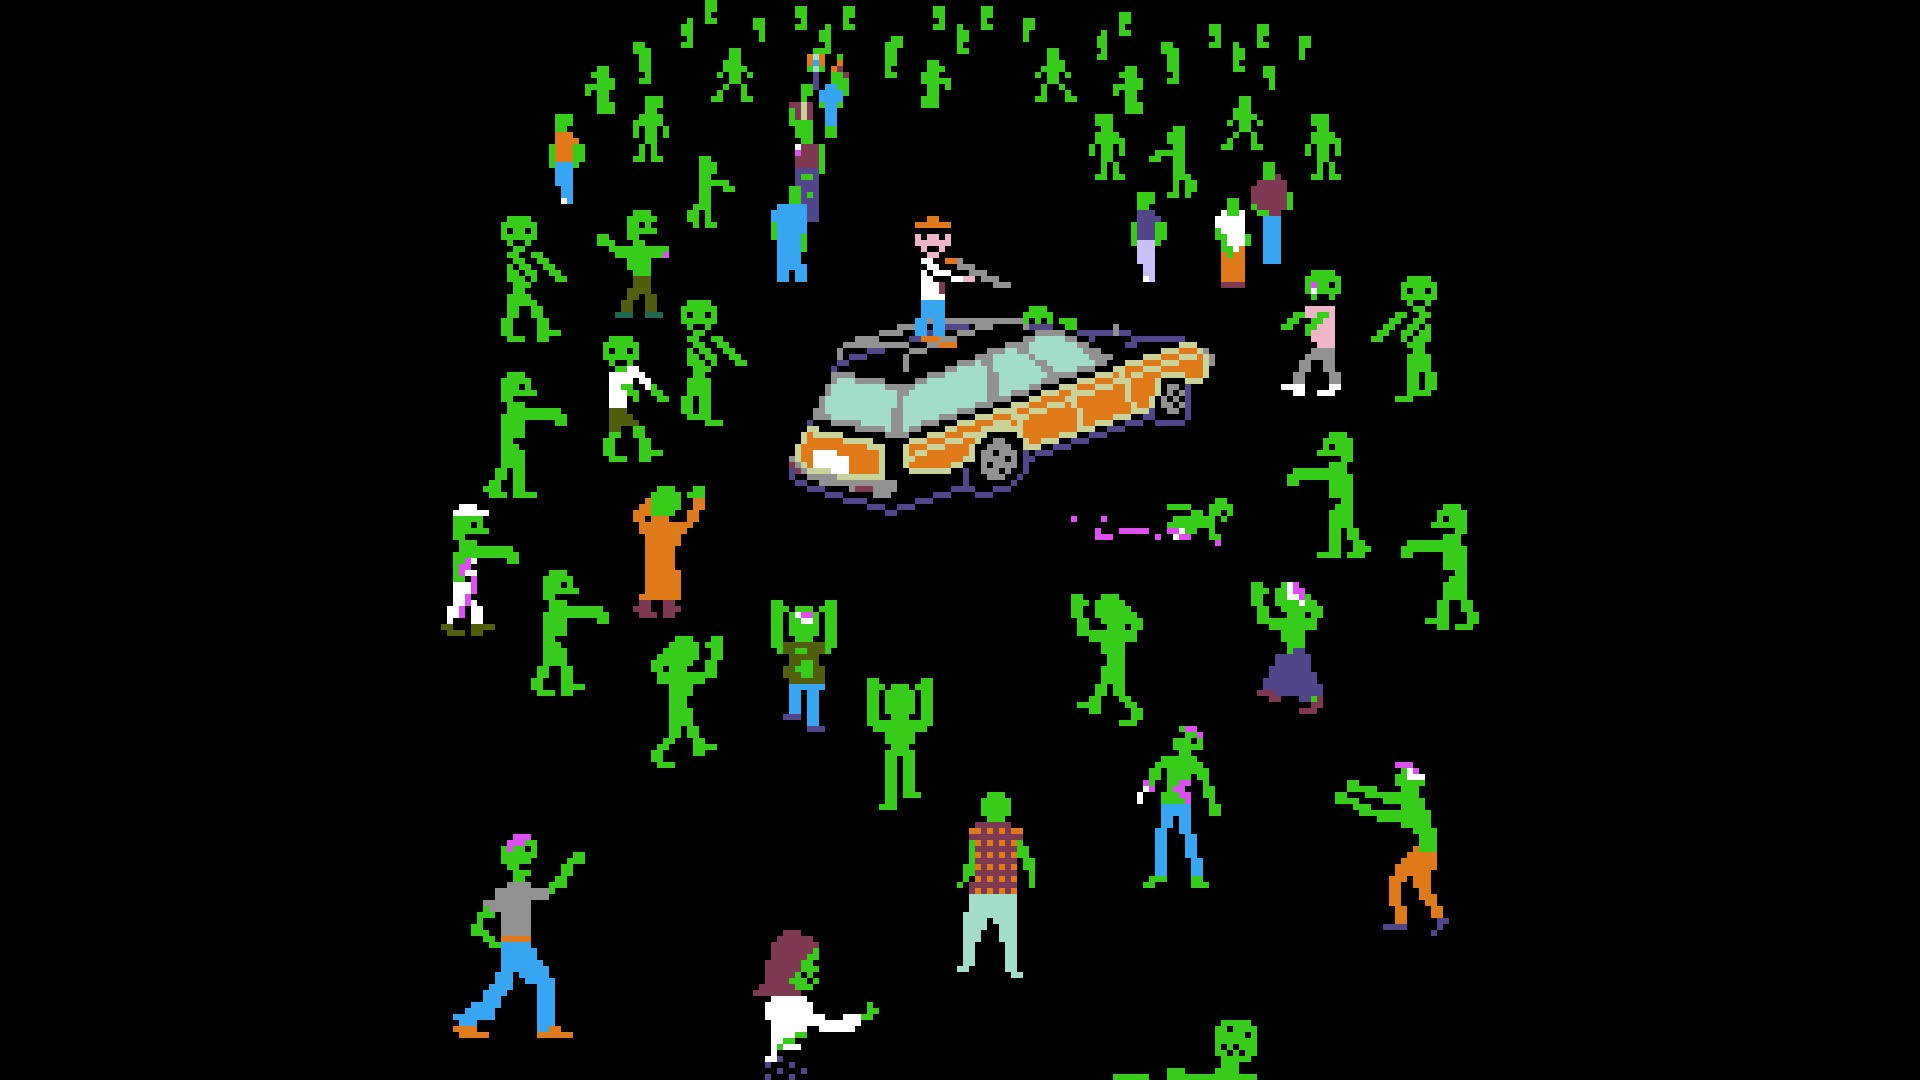 Black Background Digital Art Minimalism Zombies Video Games Retro Games Pixels Gun Men Car Green Sha 1920x1080